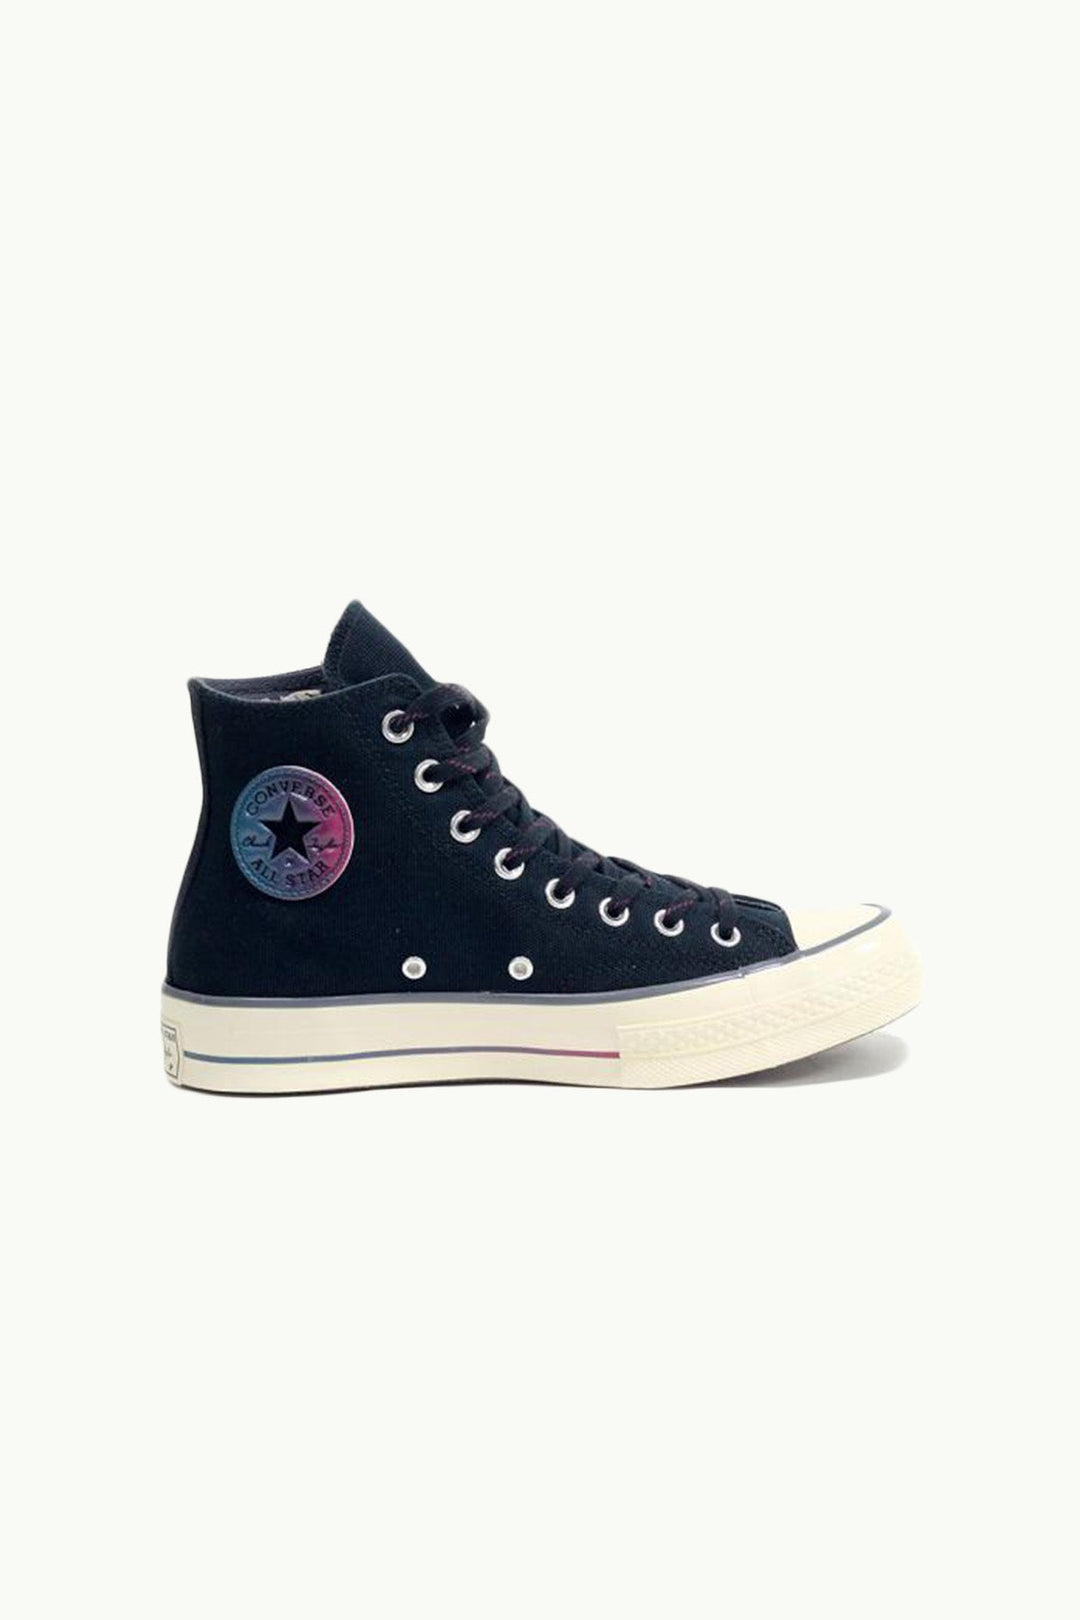 נעלי Chuck 70 בצבע שחור דגרדה הולוגרמה - Converse